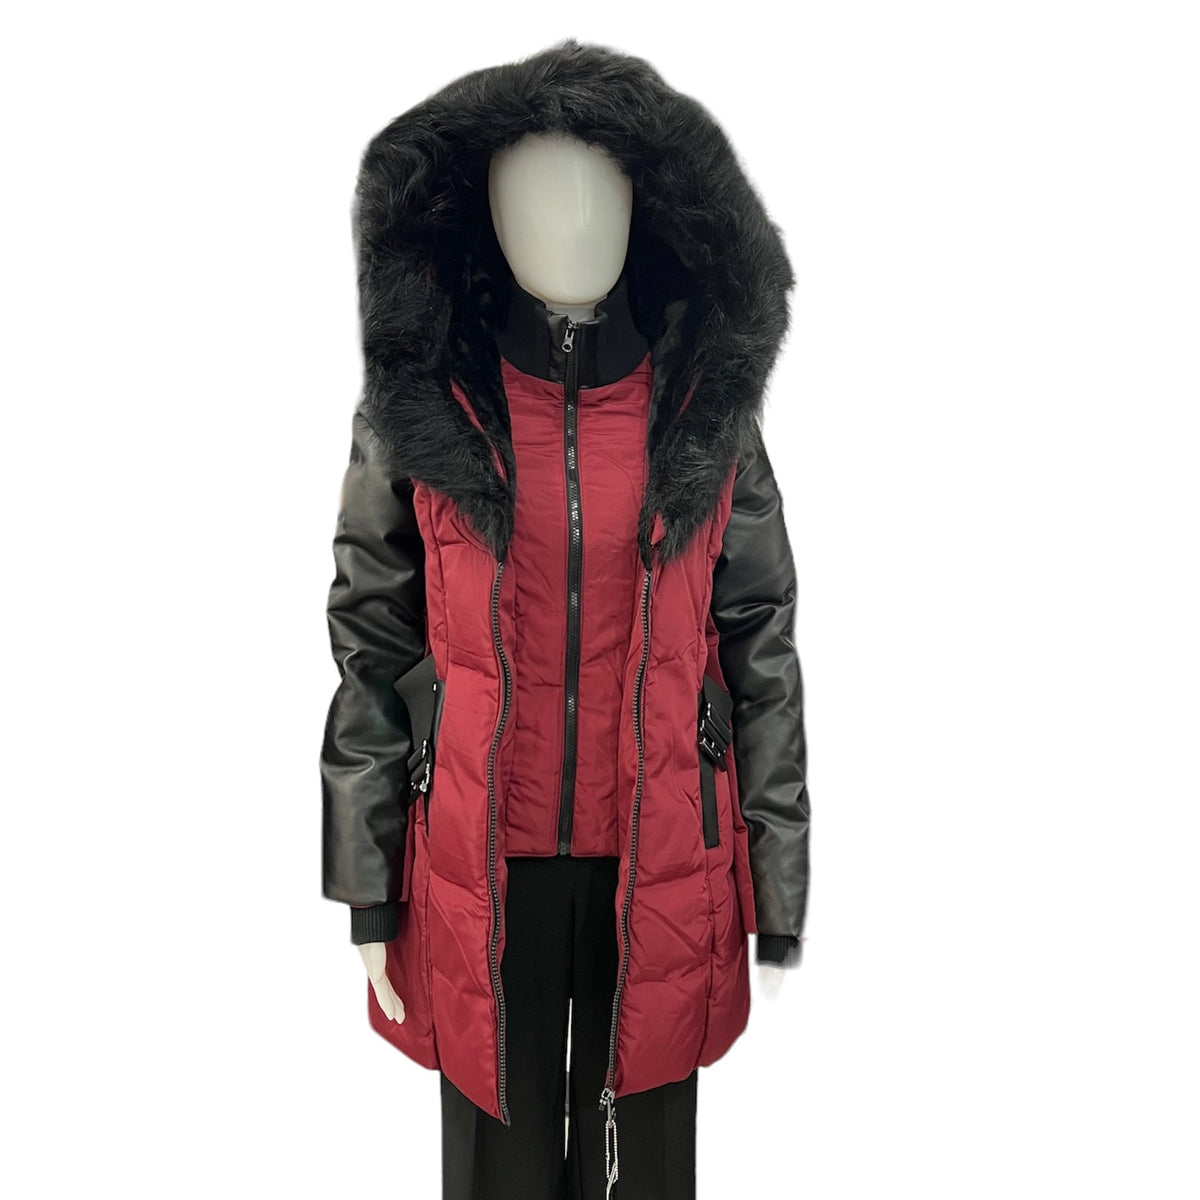 Le manteau d'hiver 3R Arctic Wear comporte une chaleur assurée pour vous garder au chaud toute l'année! Disponible en bourgogne, ce manteau est la pièce parfaite pour avoir un look élégant même en plein hiver. Beaucoup de style et une chaleur bonus en option!